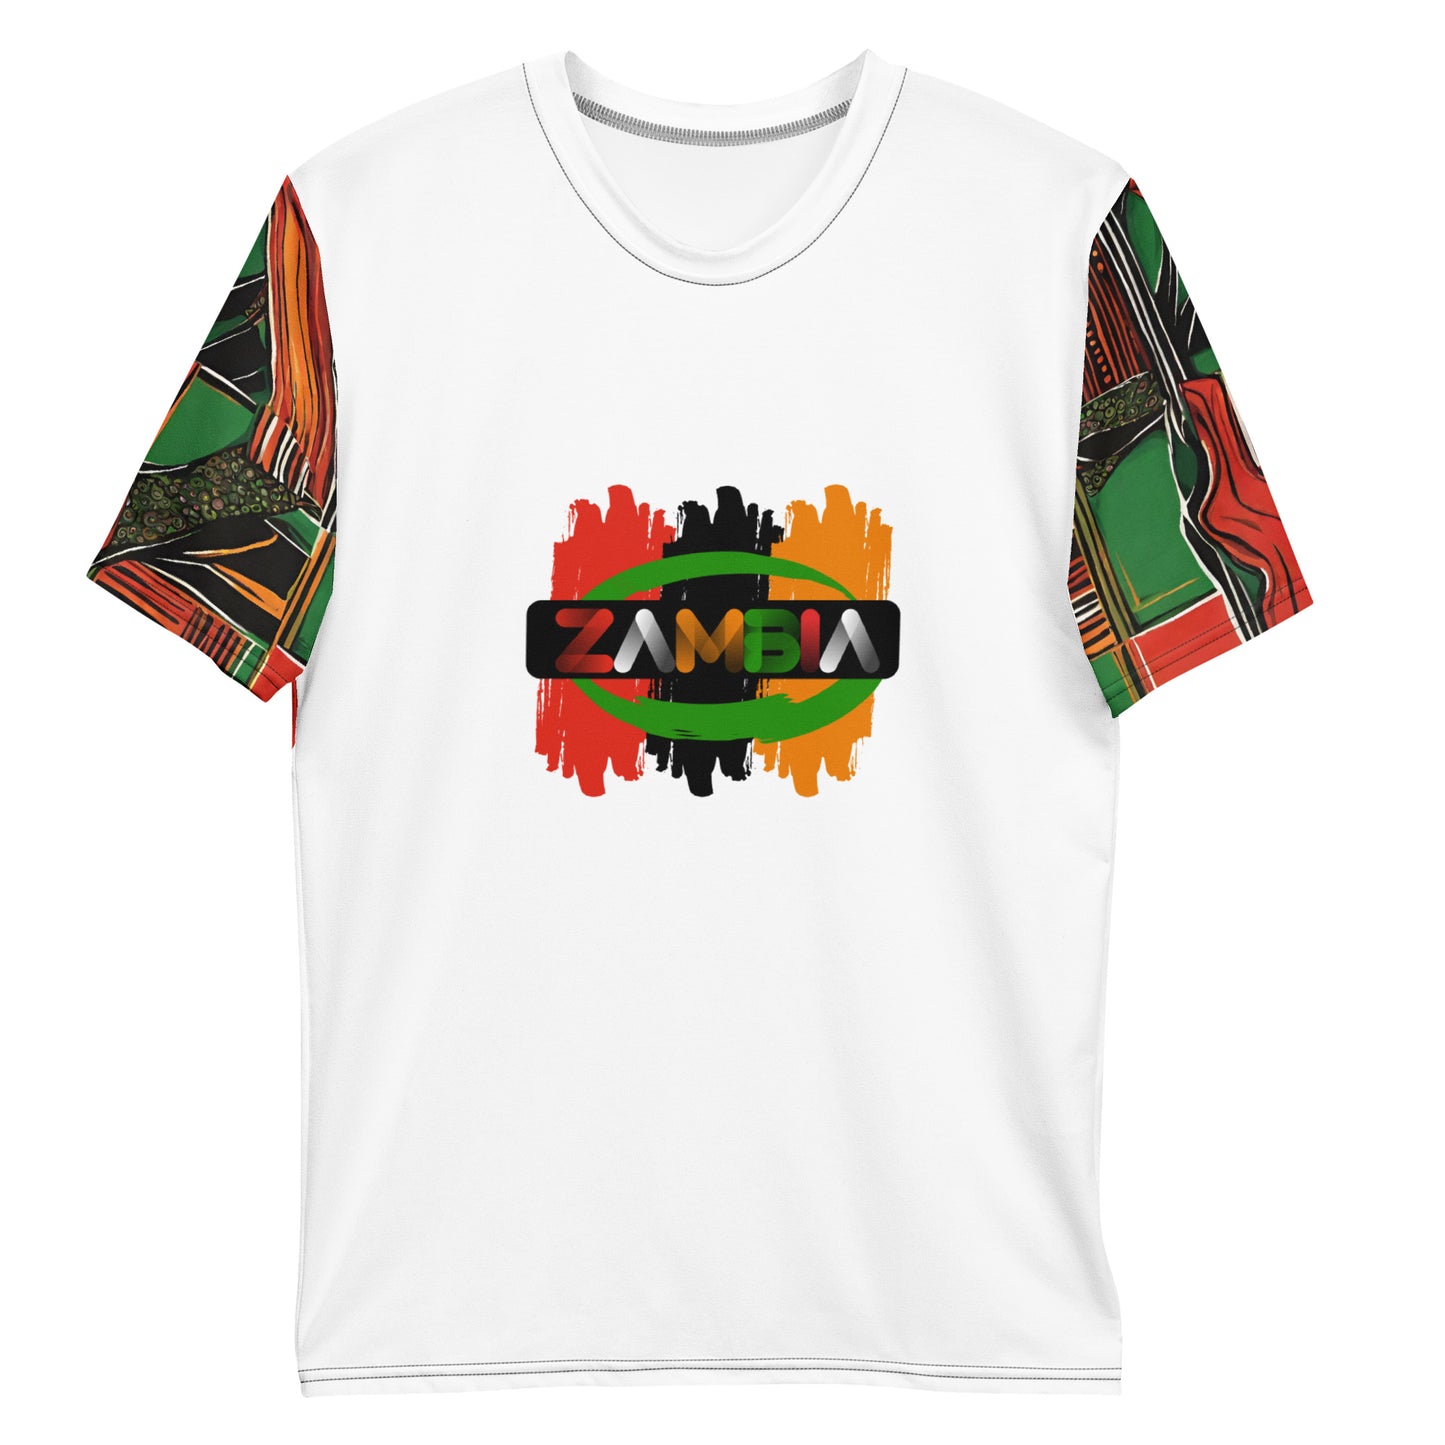 Men's ZAMBIA Afro sleeve t-shirt